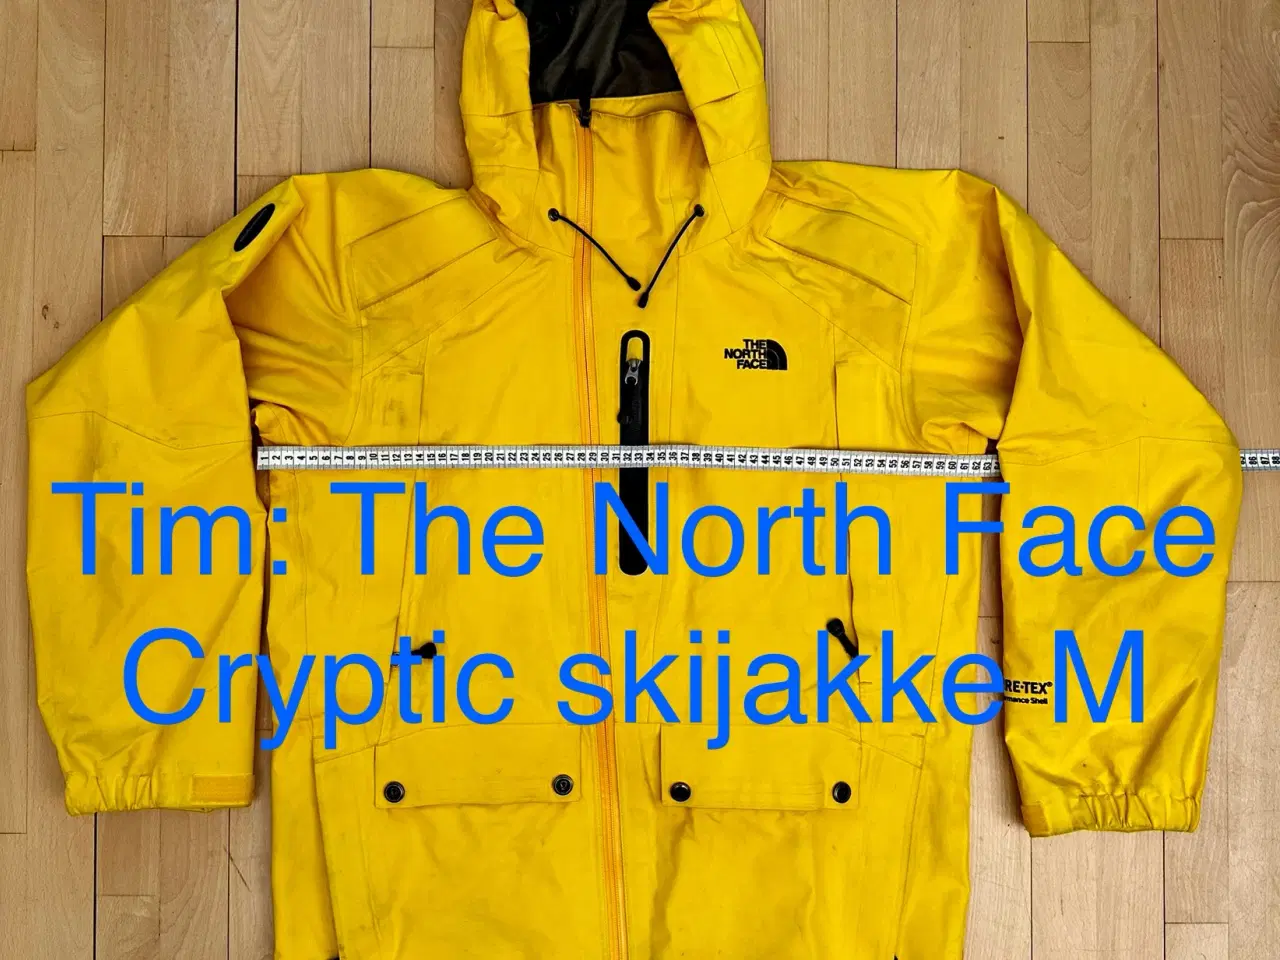 Billede 2 - The North Face Cryptic skijakke M 